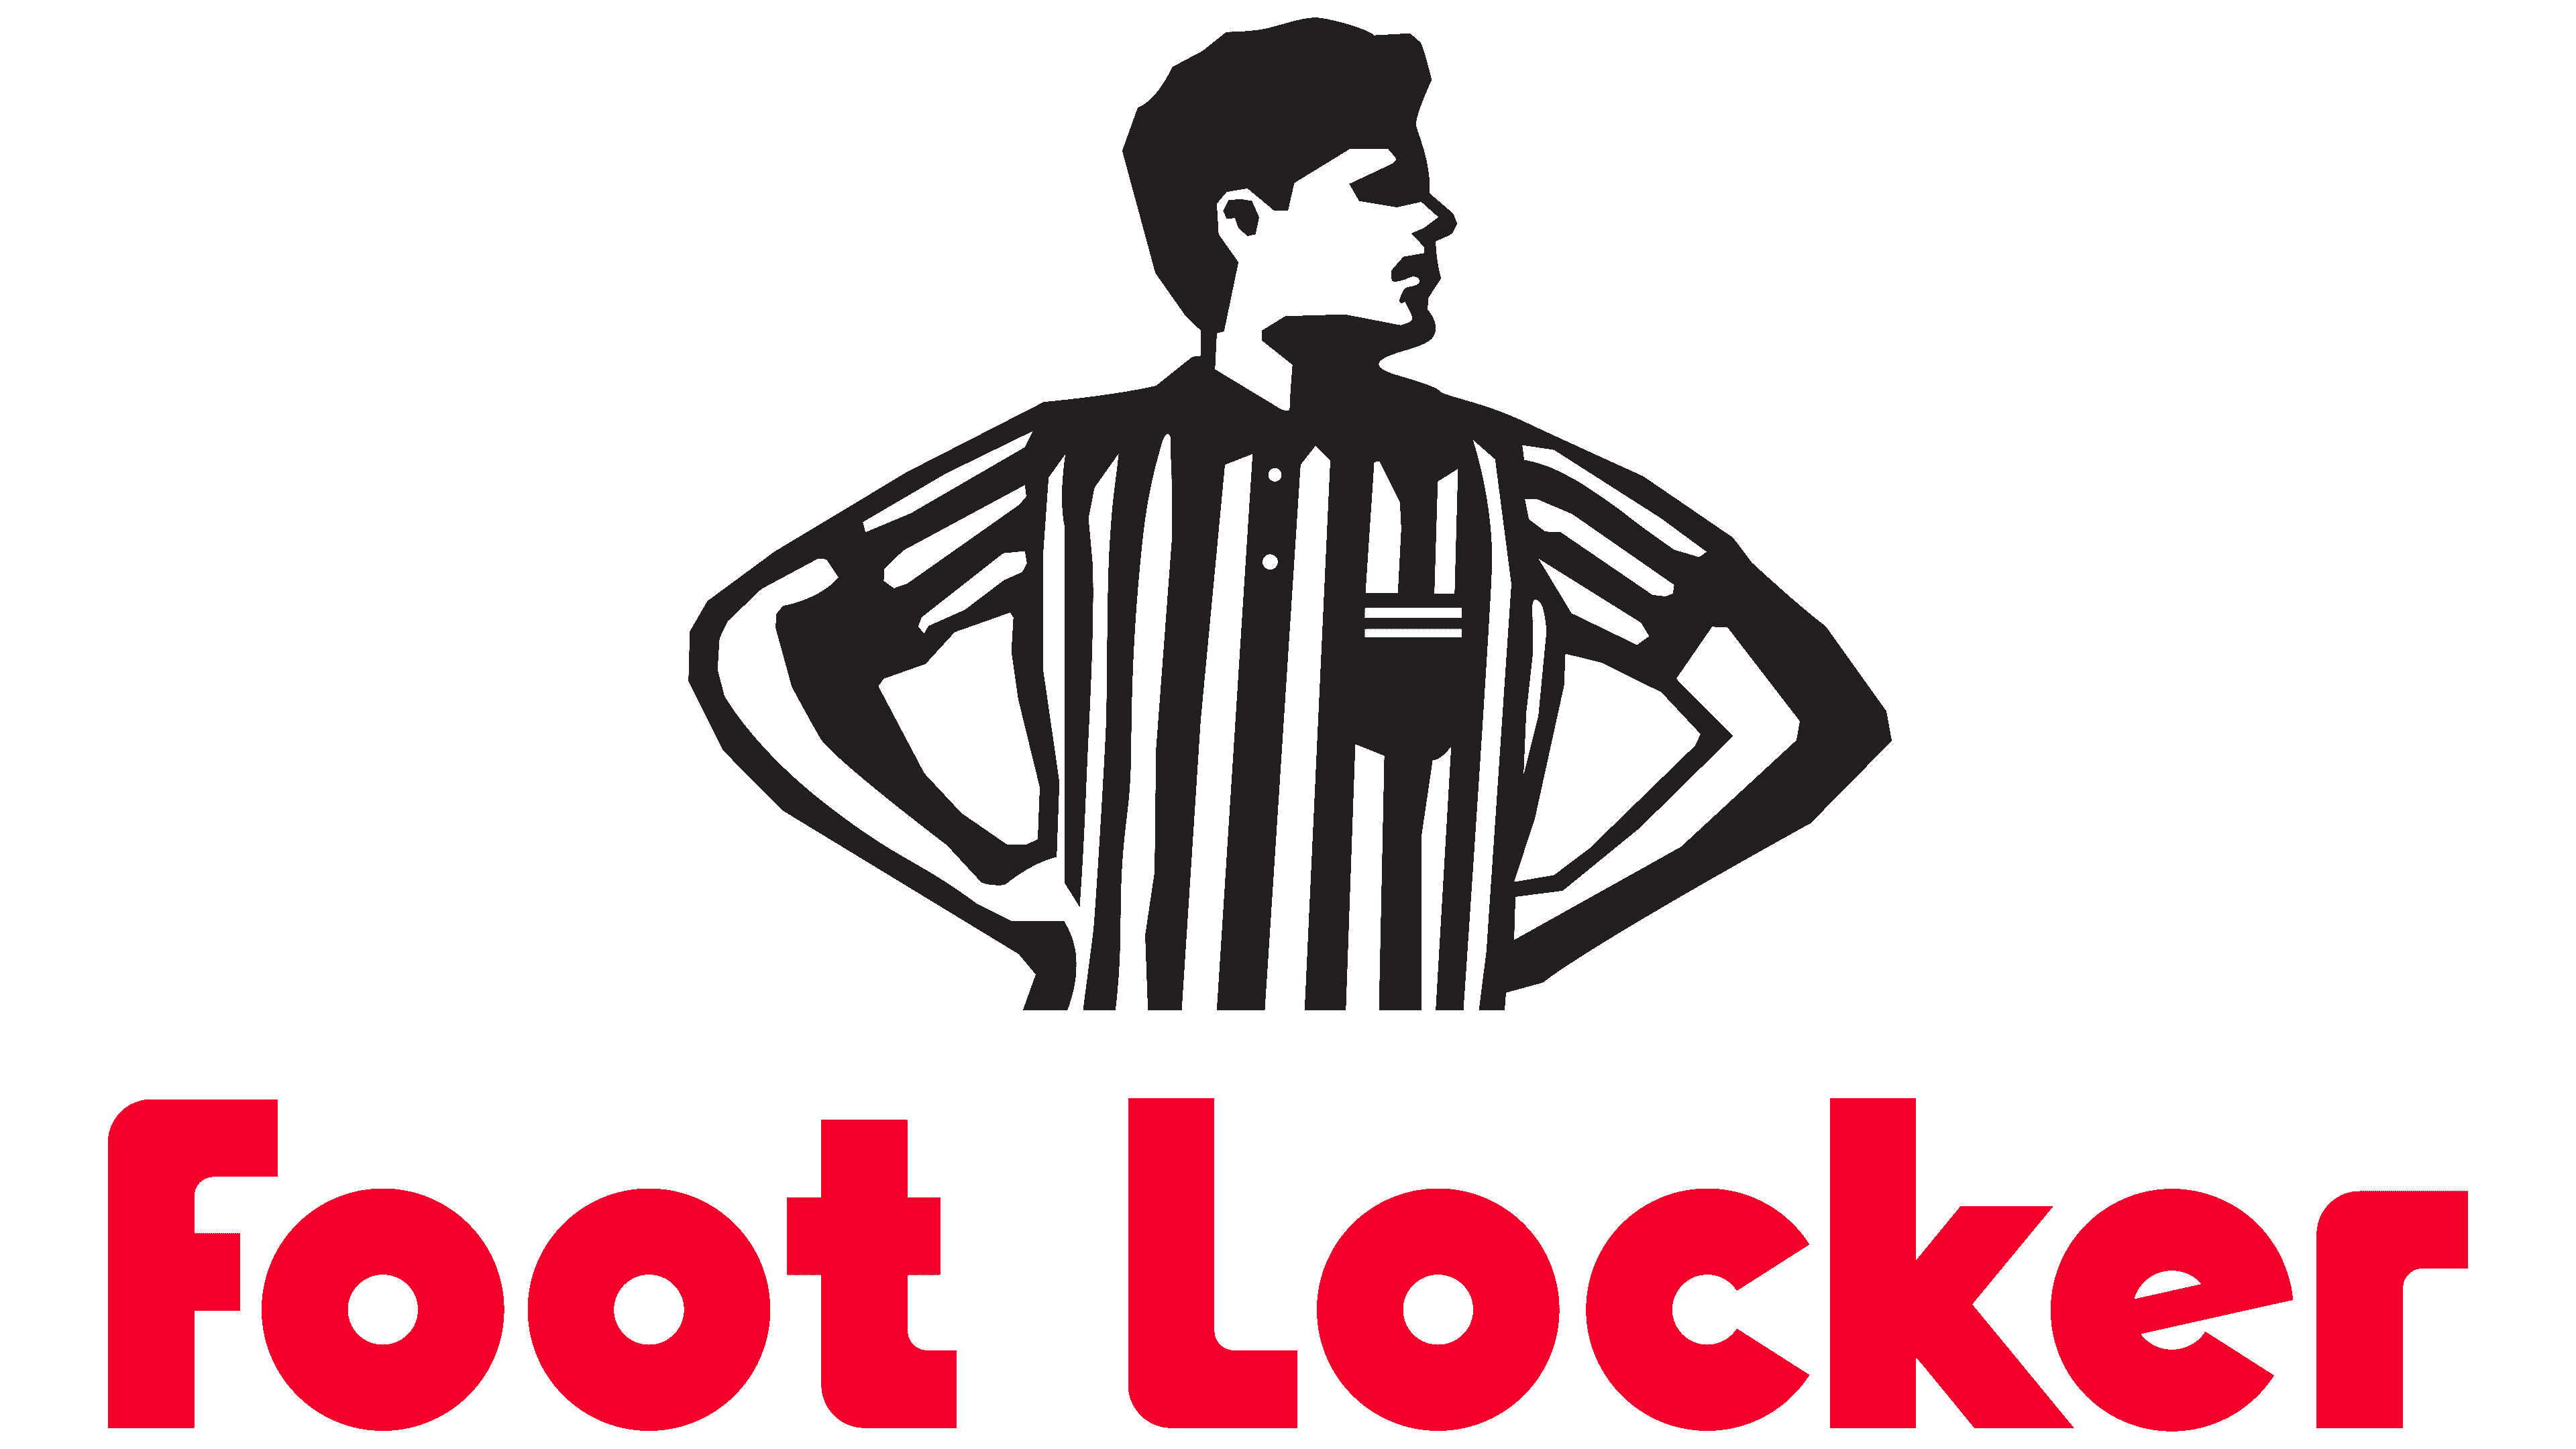 Footlocker, el Outlet de cientos de webs deportivas